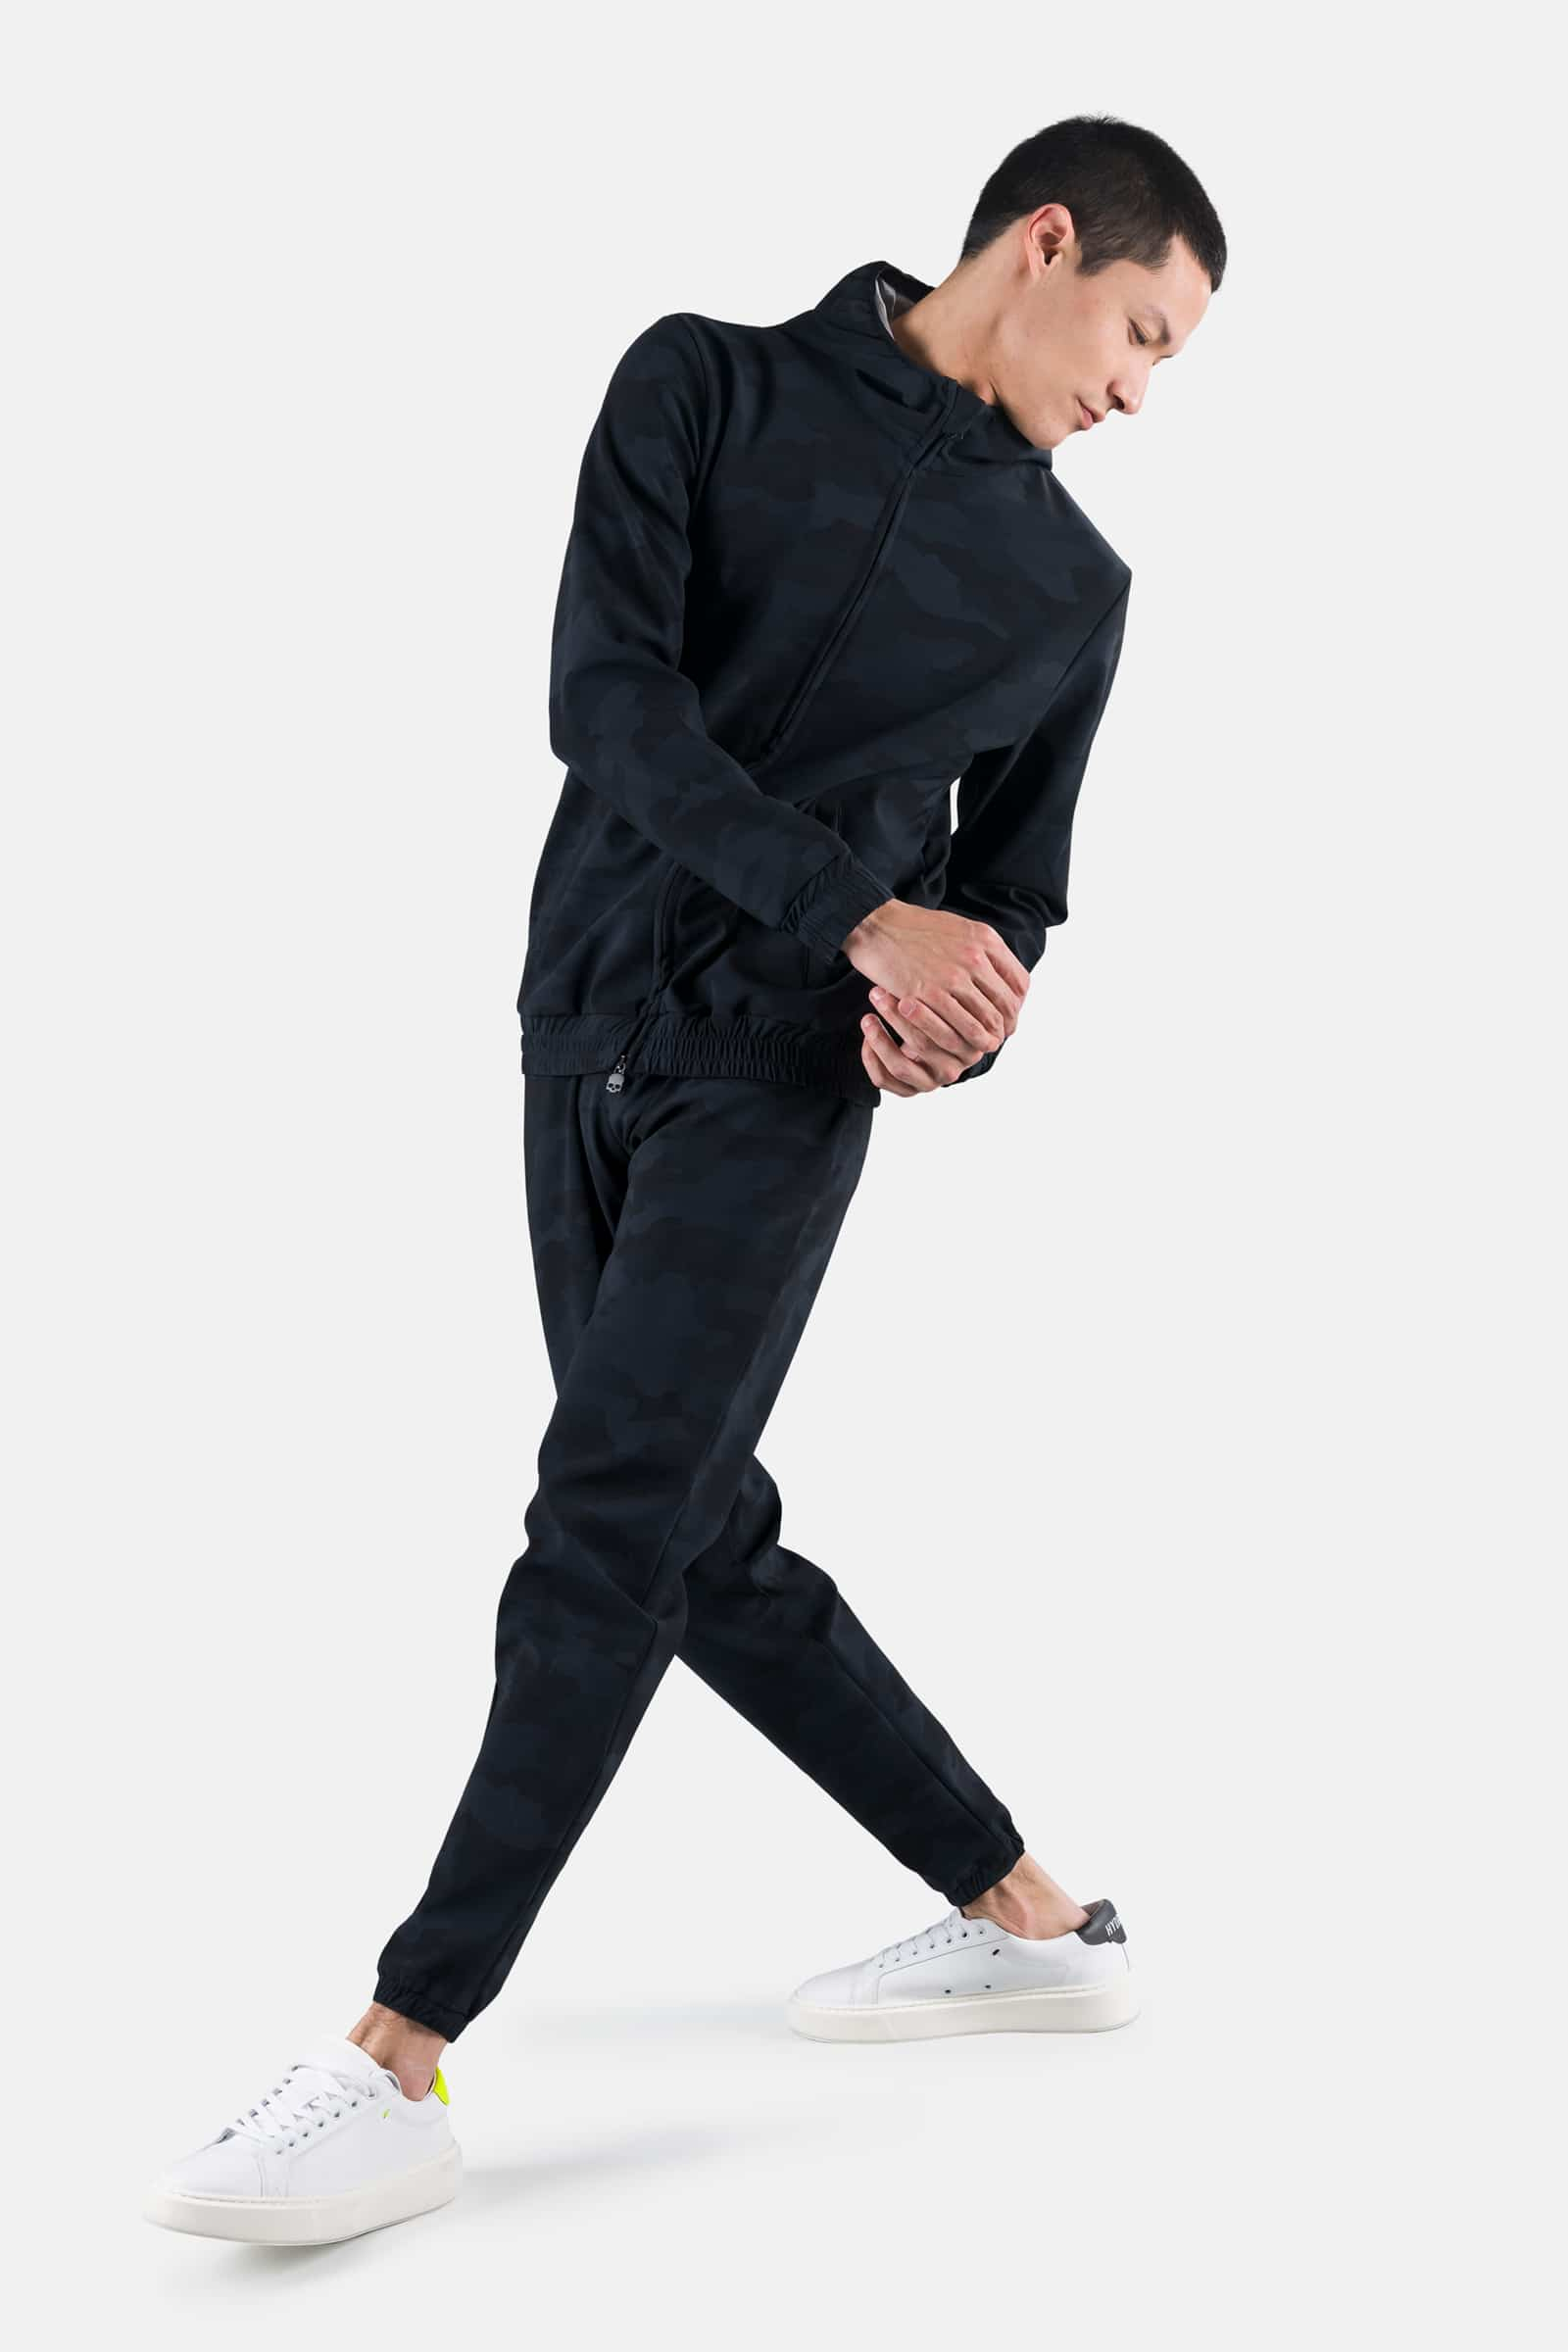 URBAN HOODIE - Apparel - Hydrogen - Luxury Sportwear